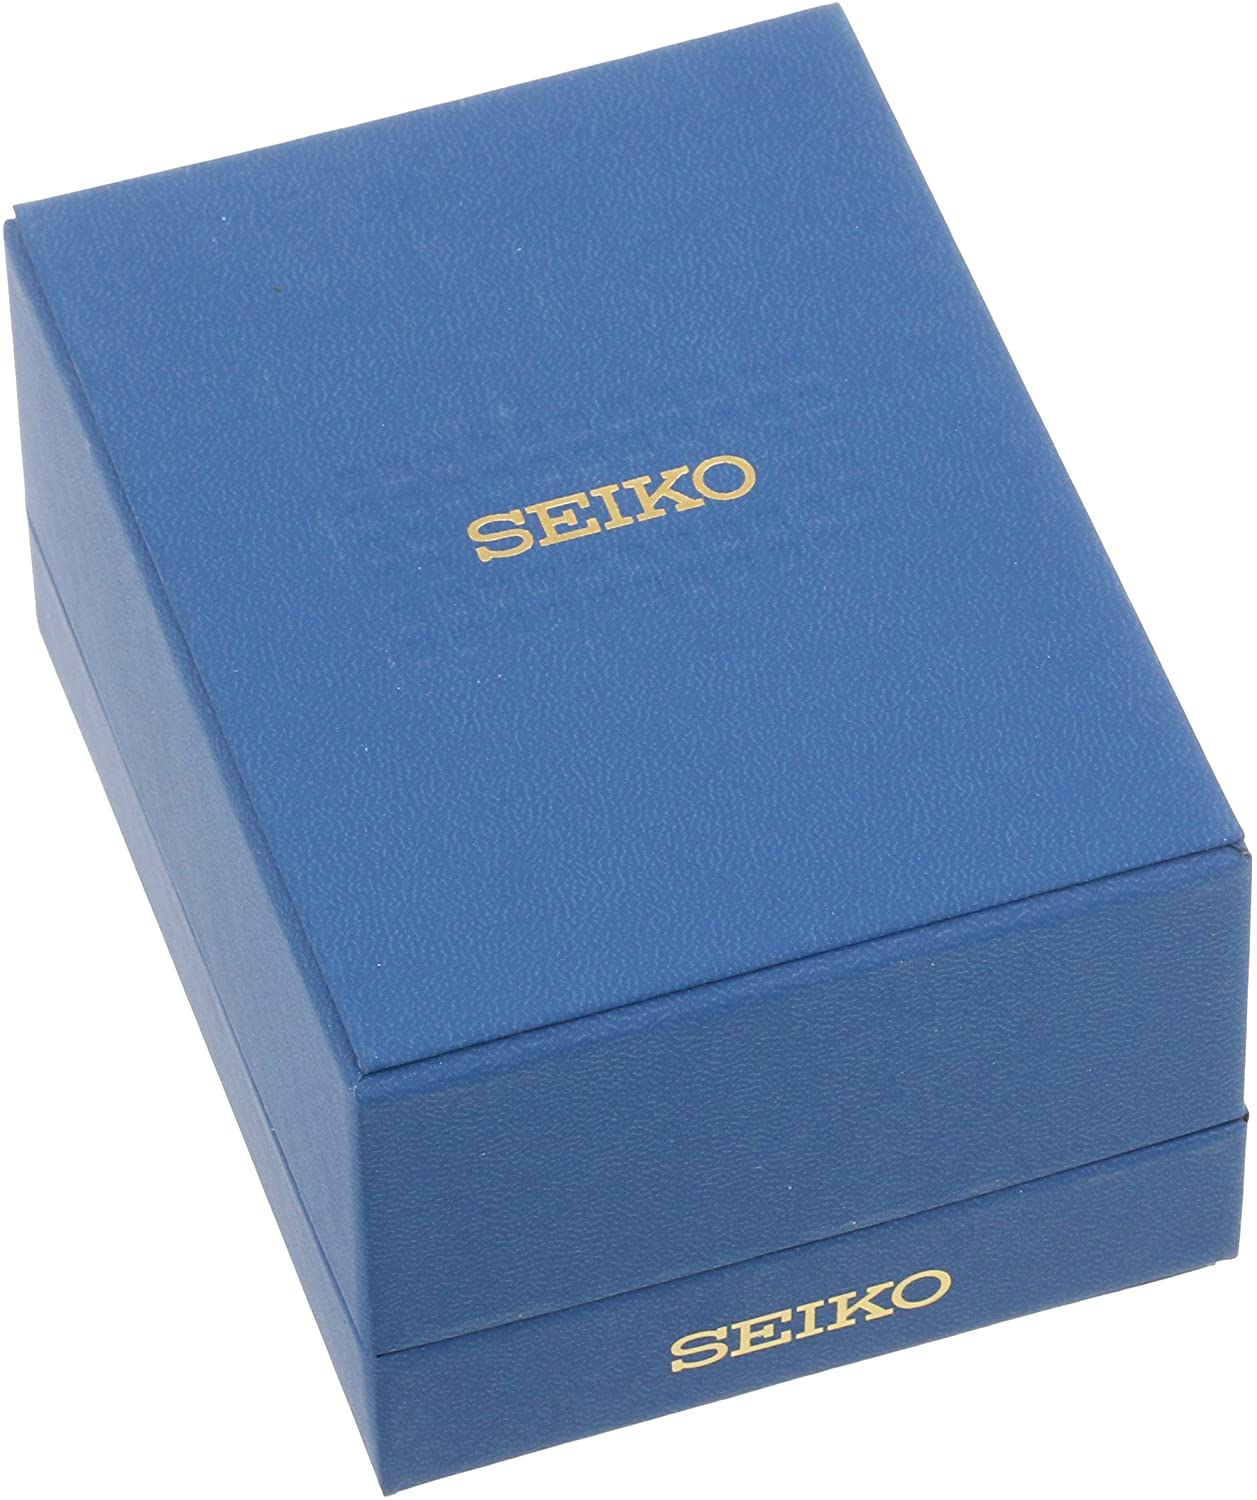 Đồng hồ Seiko cổ sẵn sàng (SEIKO SNE331 Watch) Seiko SNE331 Sport Solar  Black Stainless Steel Watch with Beige Nylon Band [Hộp & Sách hướng dẫn của  Nhà sản xuất + Người